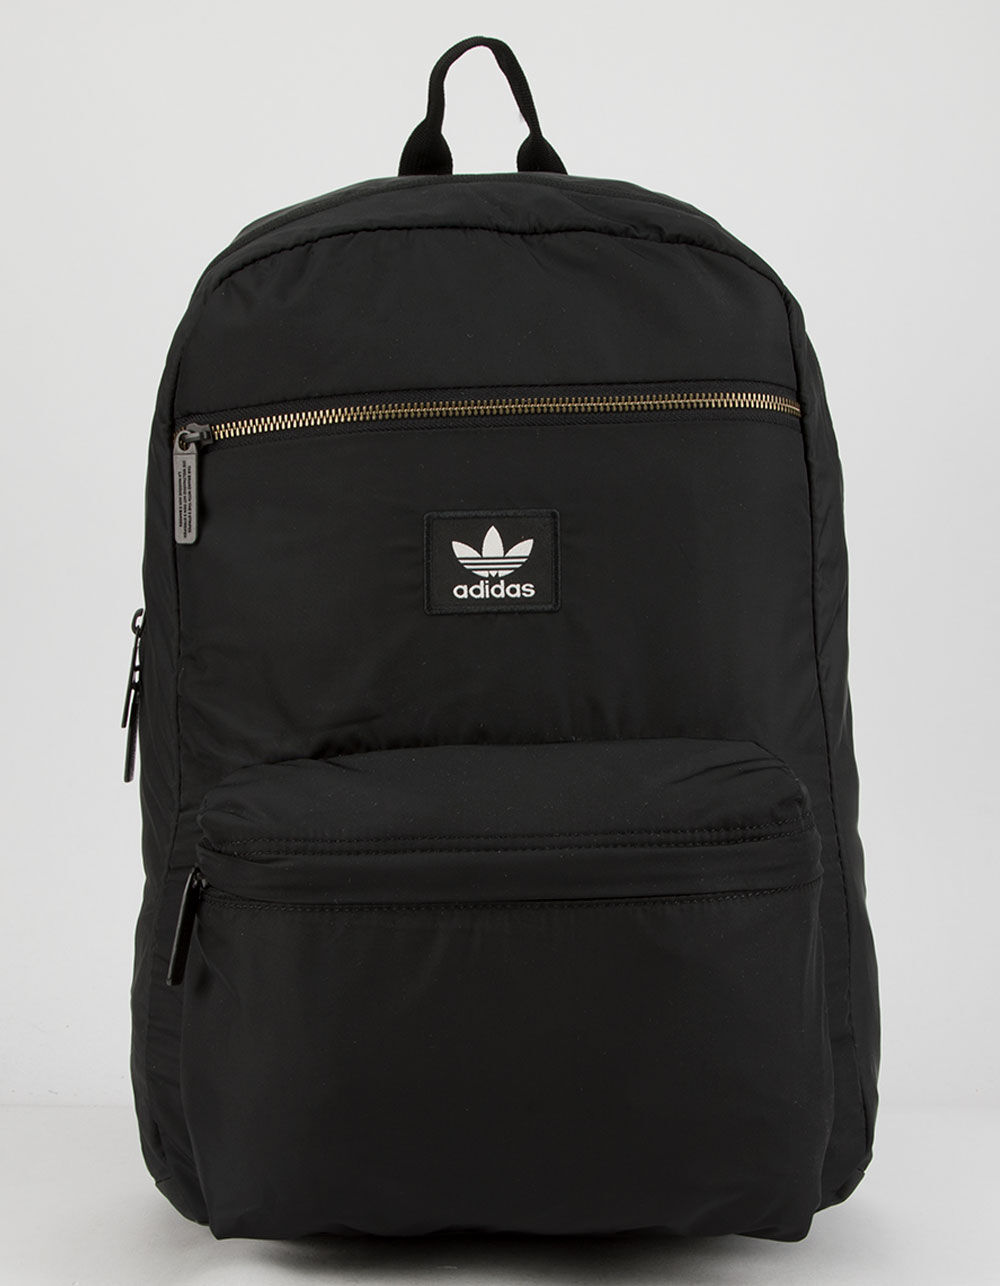 ADIDAS Originals National Plus Backpack - BLACK | Tillys